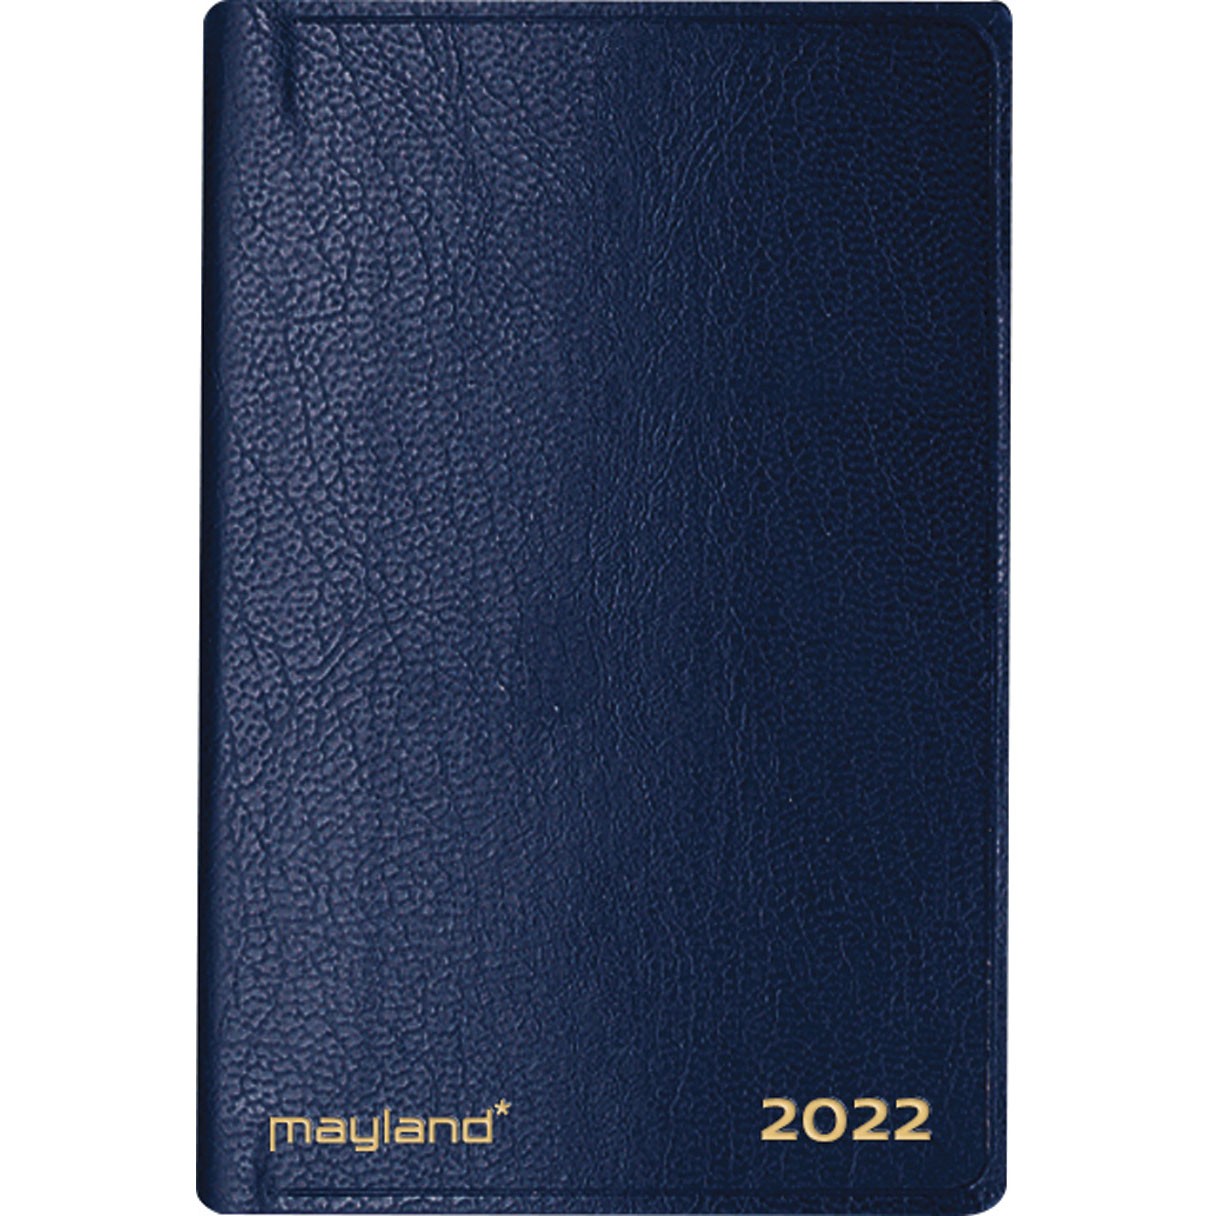 Mayland 2022 22162000 lommeugekalender 12x7,5cm blå